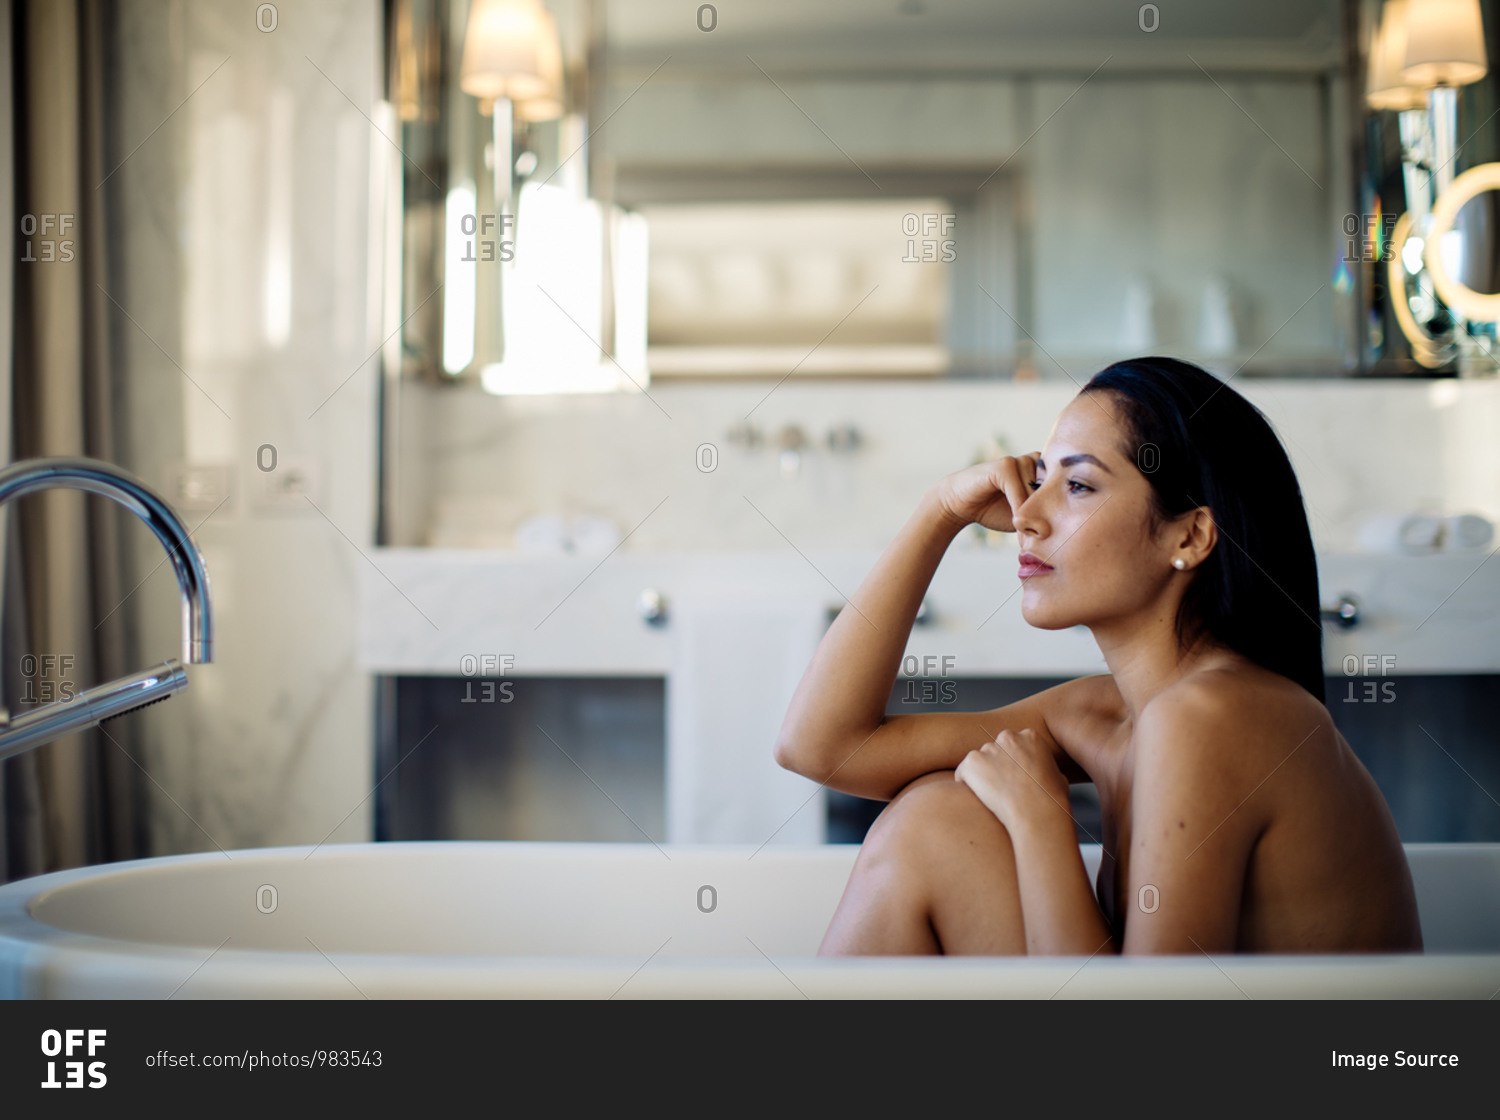 Woman relaxing in bathtub in suite